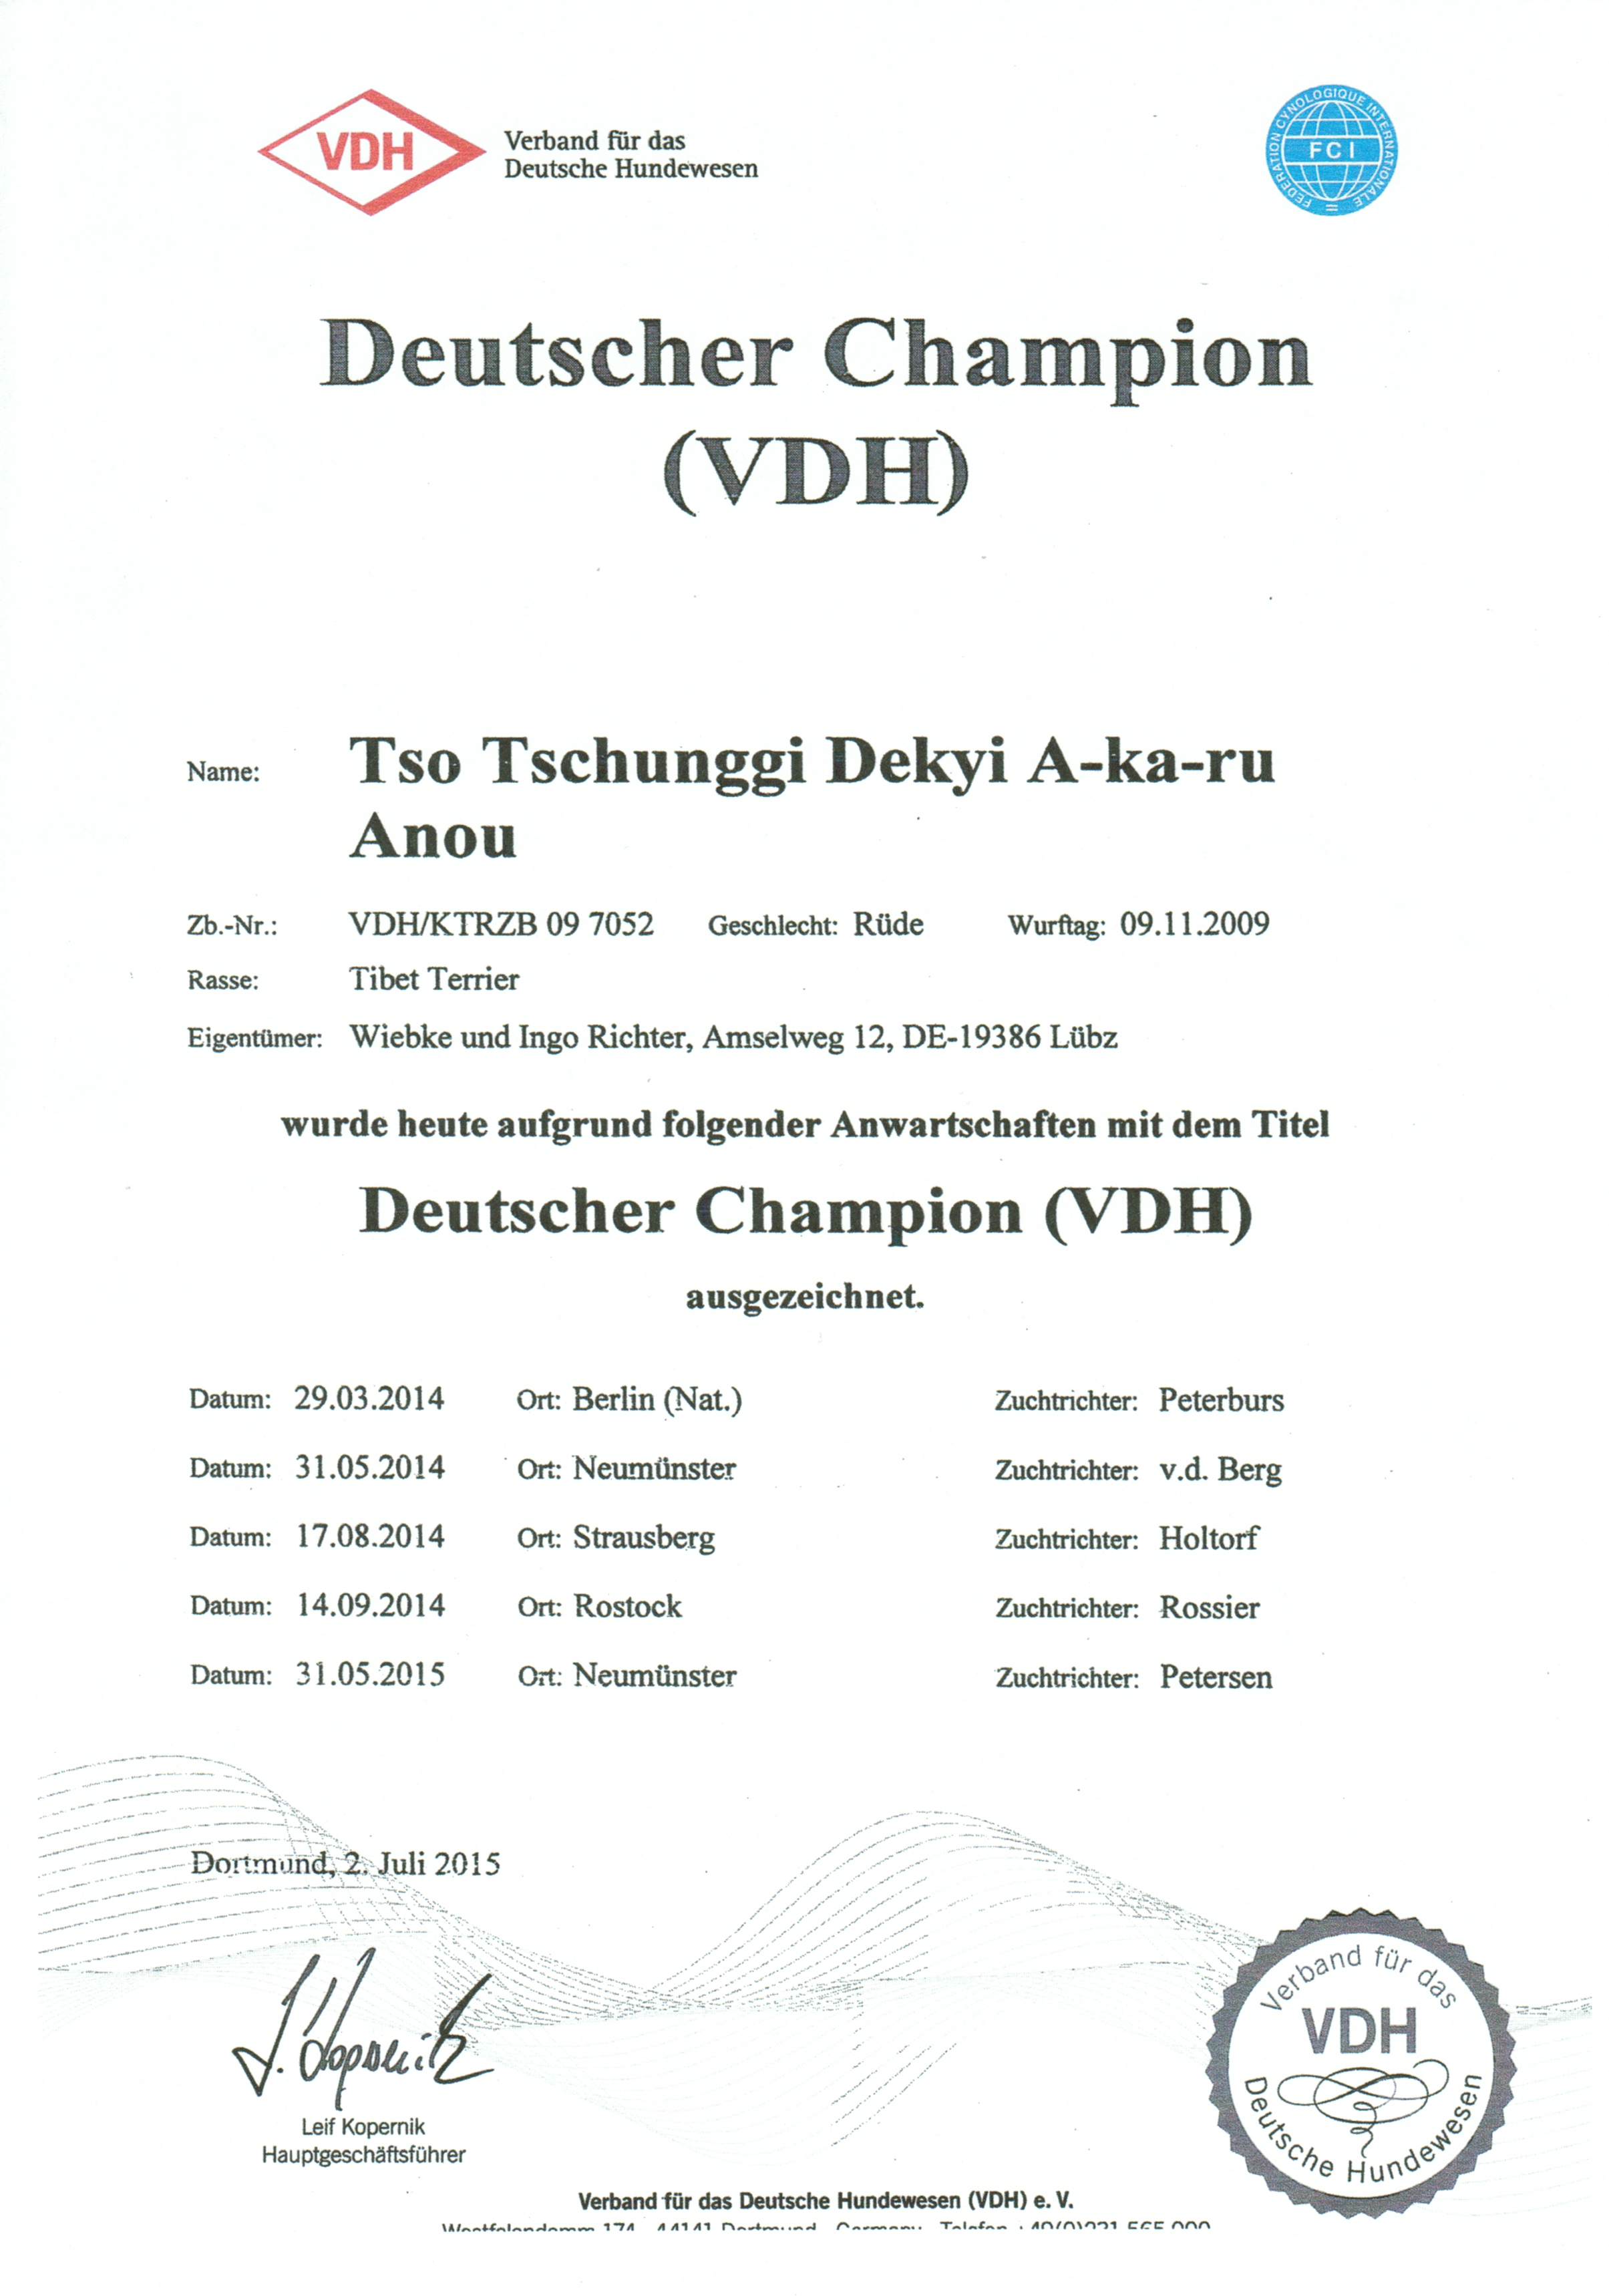 VDH-Champion-Urkunde_Akaru